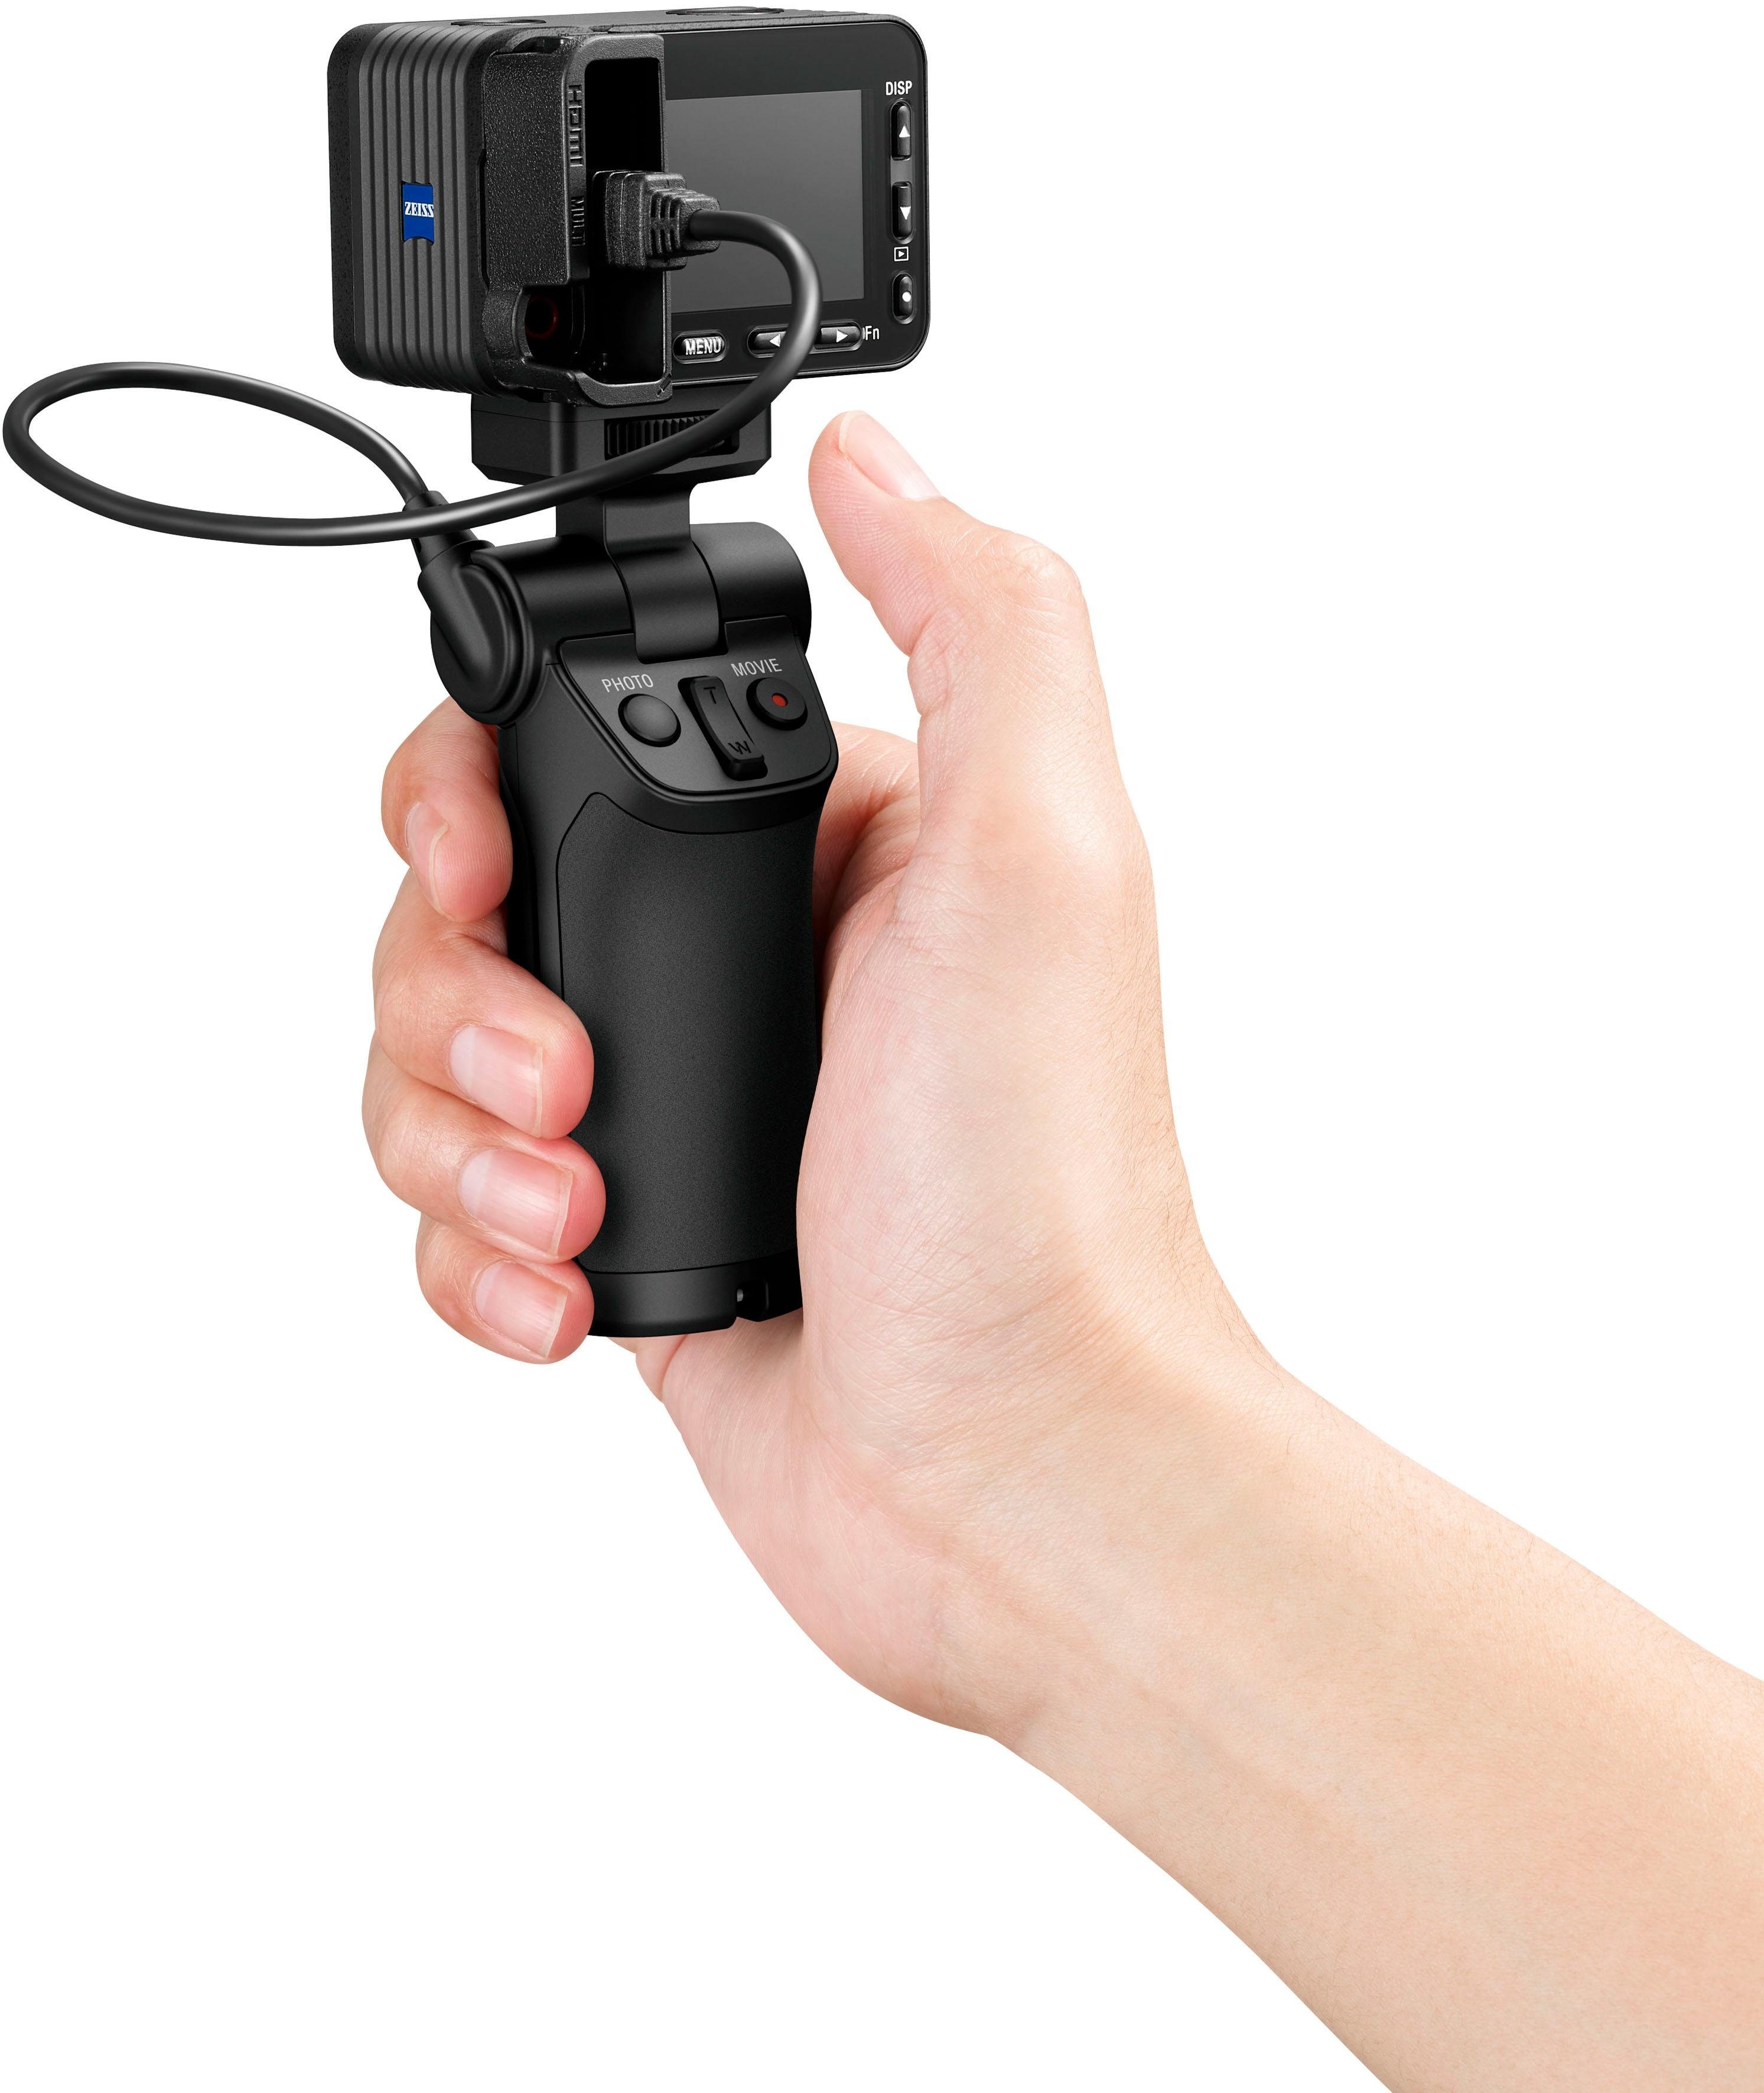 Sony WLAN MP, 15,3 RX0 (ZEISS® (Wi-Fi) Kompaktkamera T* 24-mm, (DSC-RX0M2G) Bluetooth, II Tessar